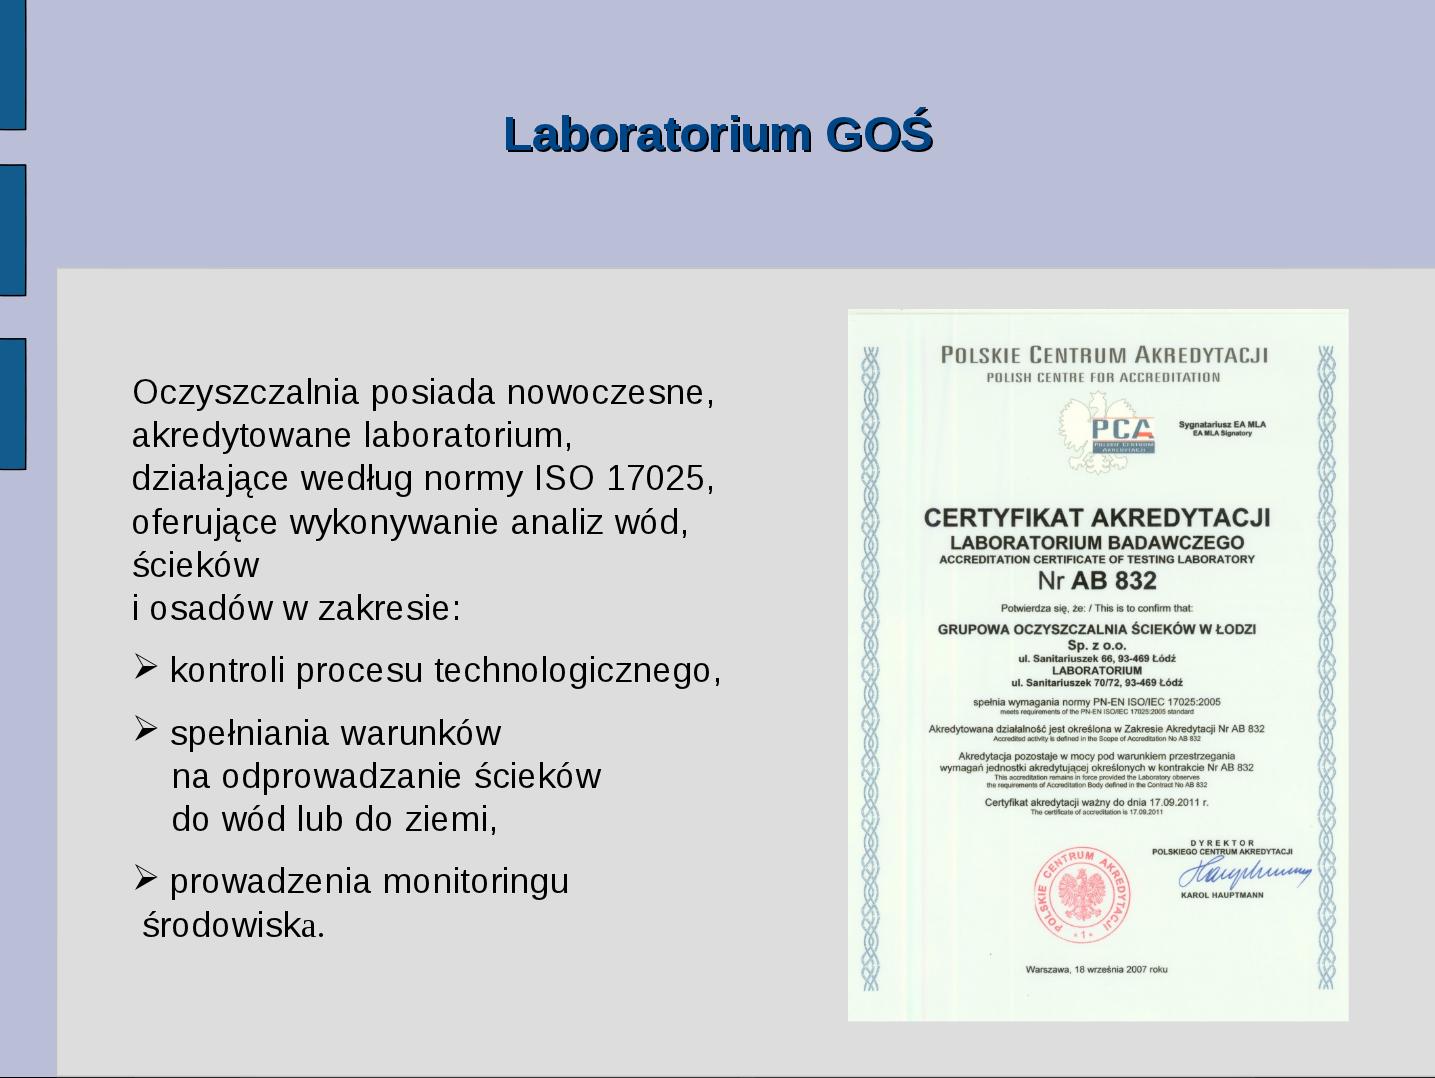 Laboratorium GOŚ Oczyszczalnia posiada nowoczesne, akredytowane laboratorium, działające według normy ISO 17025, oferujące wykonywanie analiz wód, ścieków